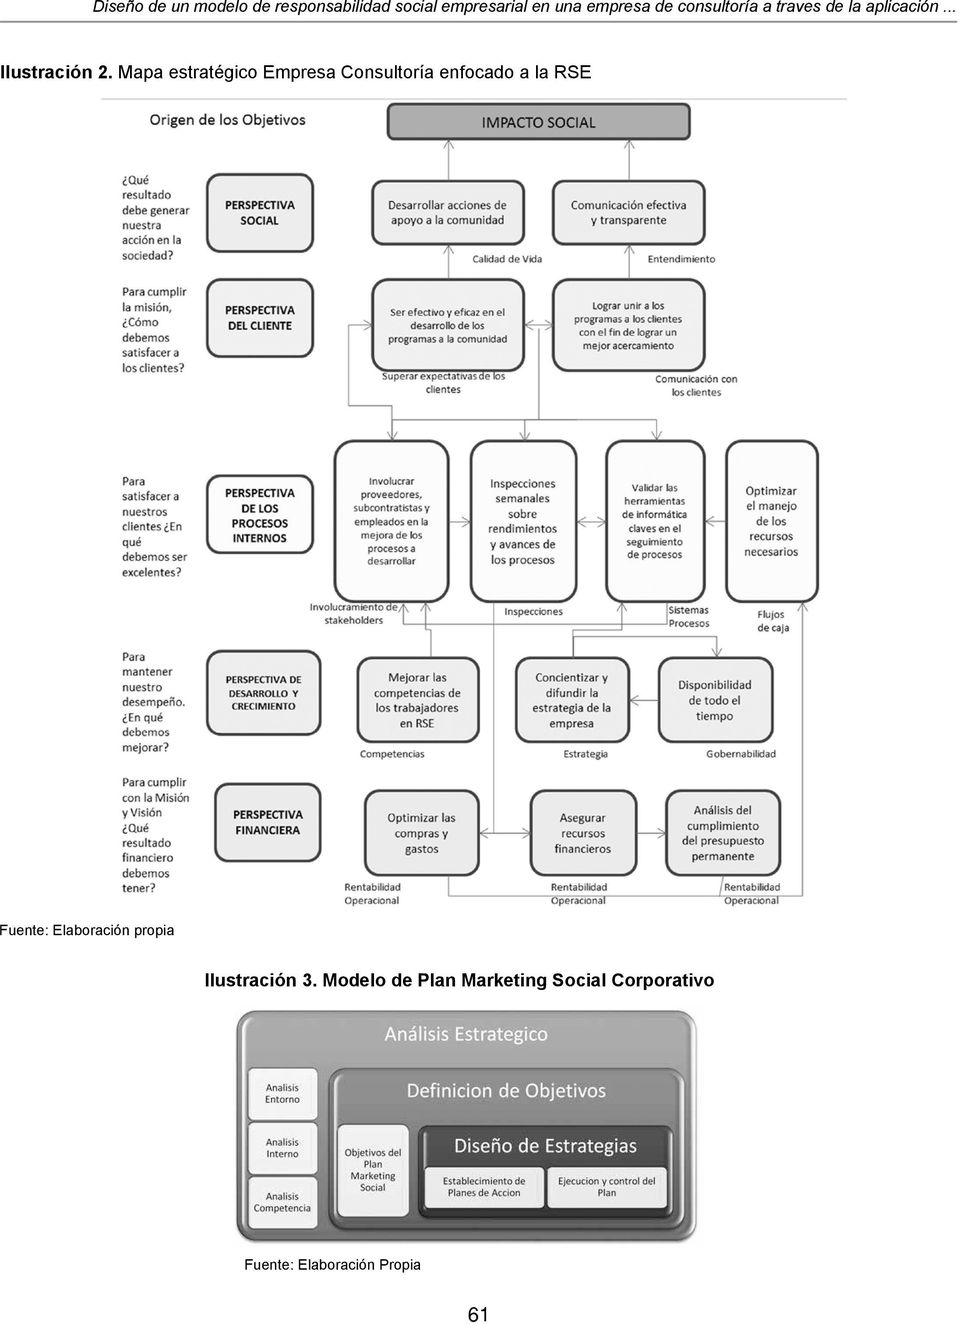 Mapa estratégico Empresa Consultoría enfocado a la RSE Fuente: Elaboración